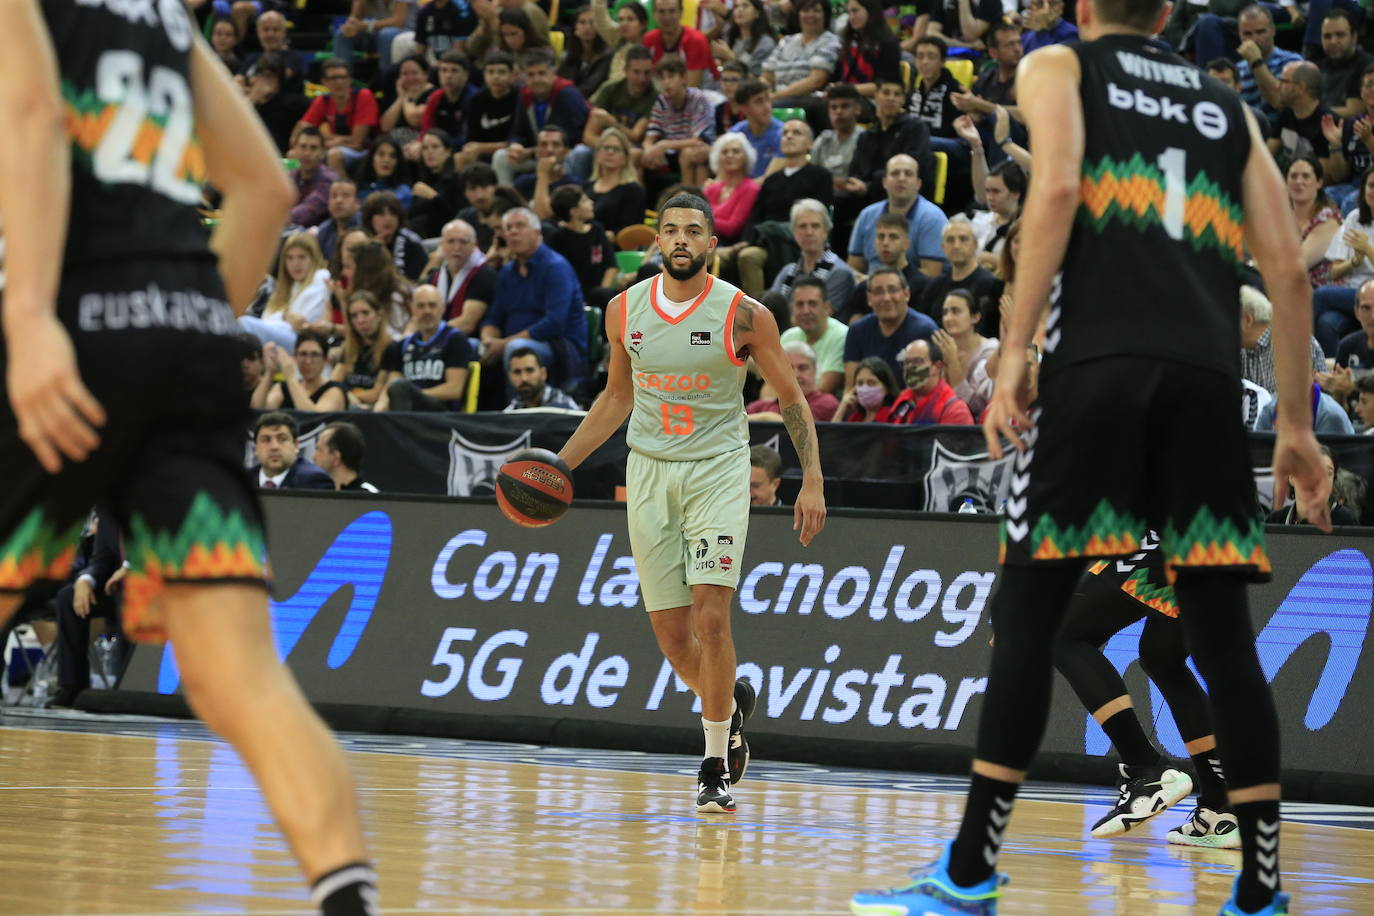 Fotos: Bilbao Basket- Baskonia, en imágenes